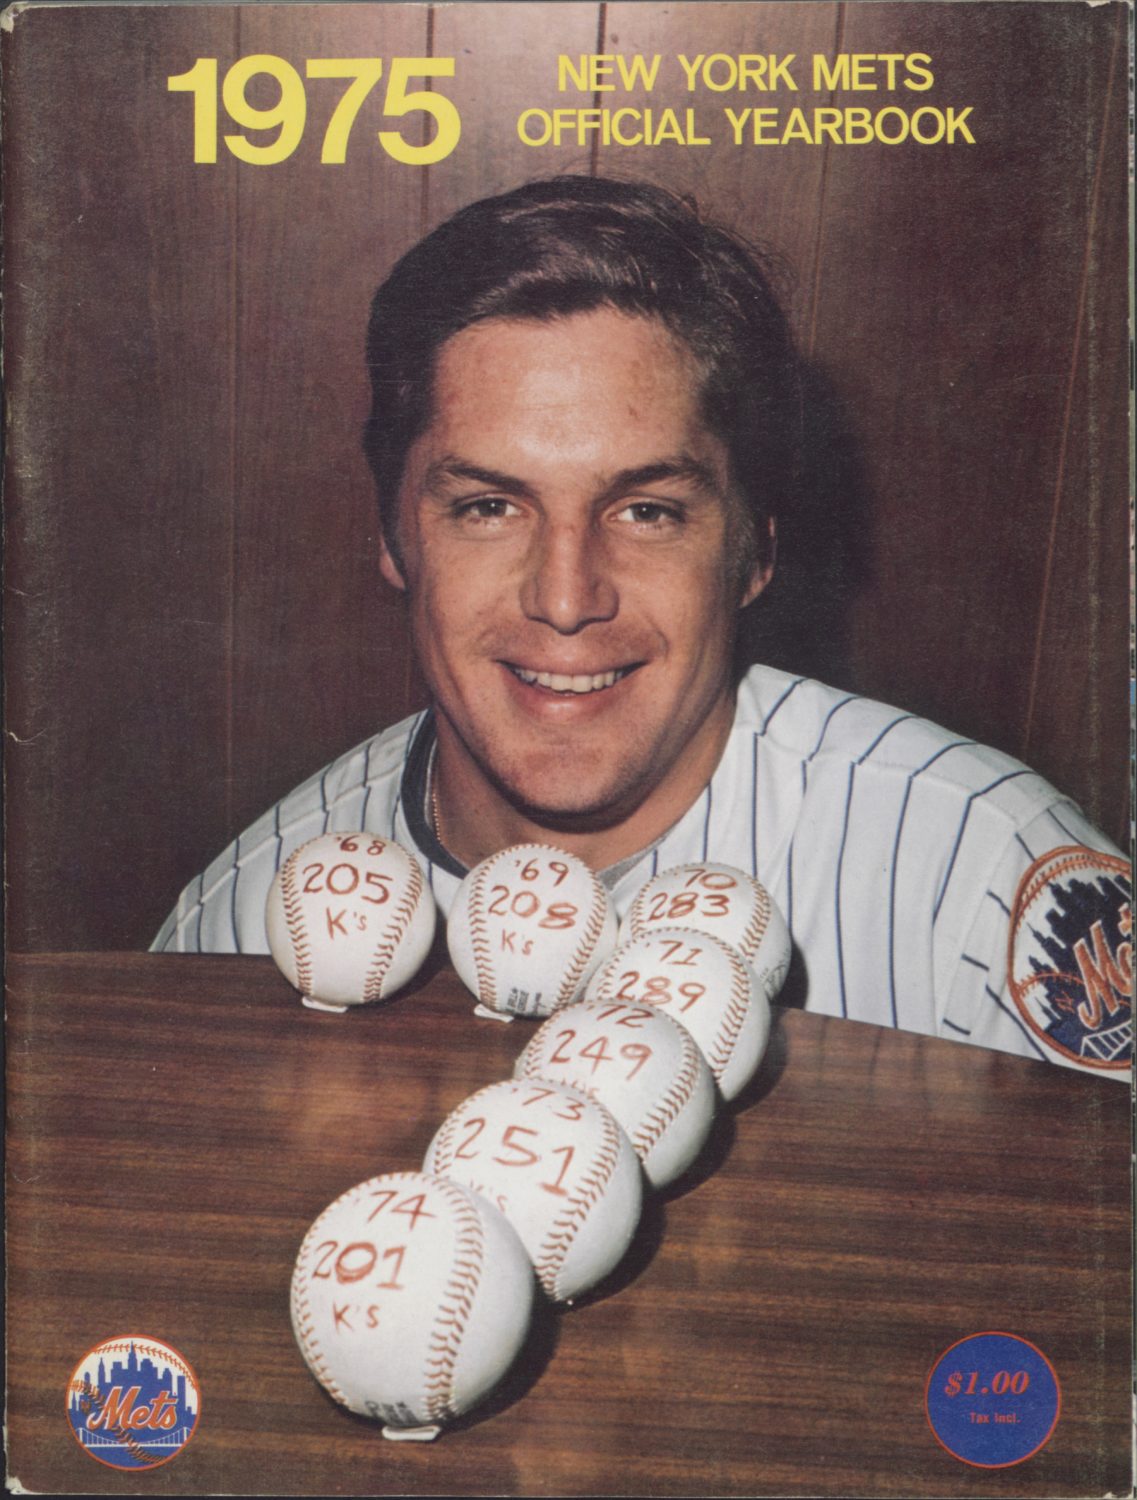 1975 Mets Yearbook: Tom Seaver